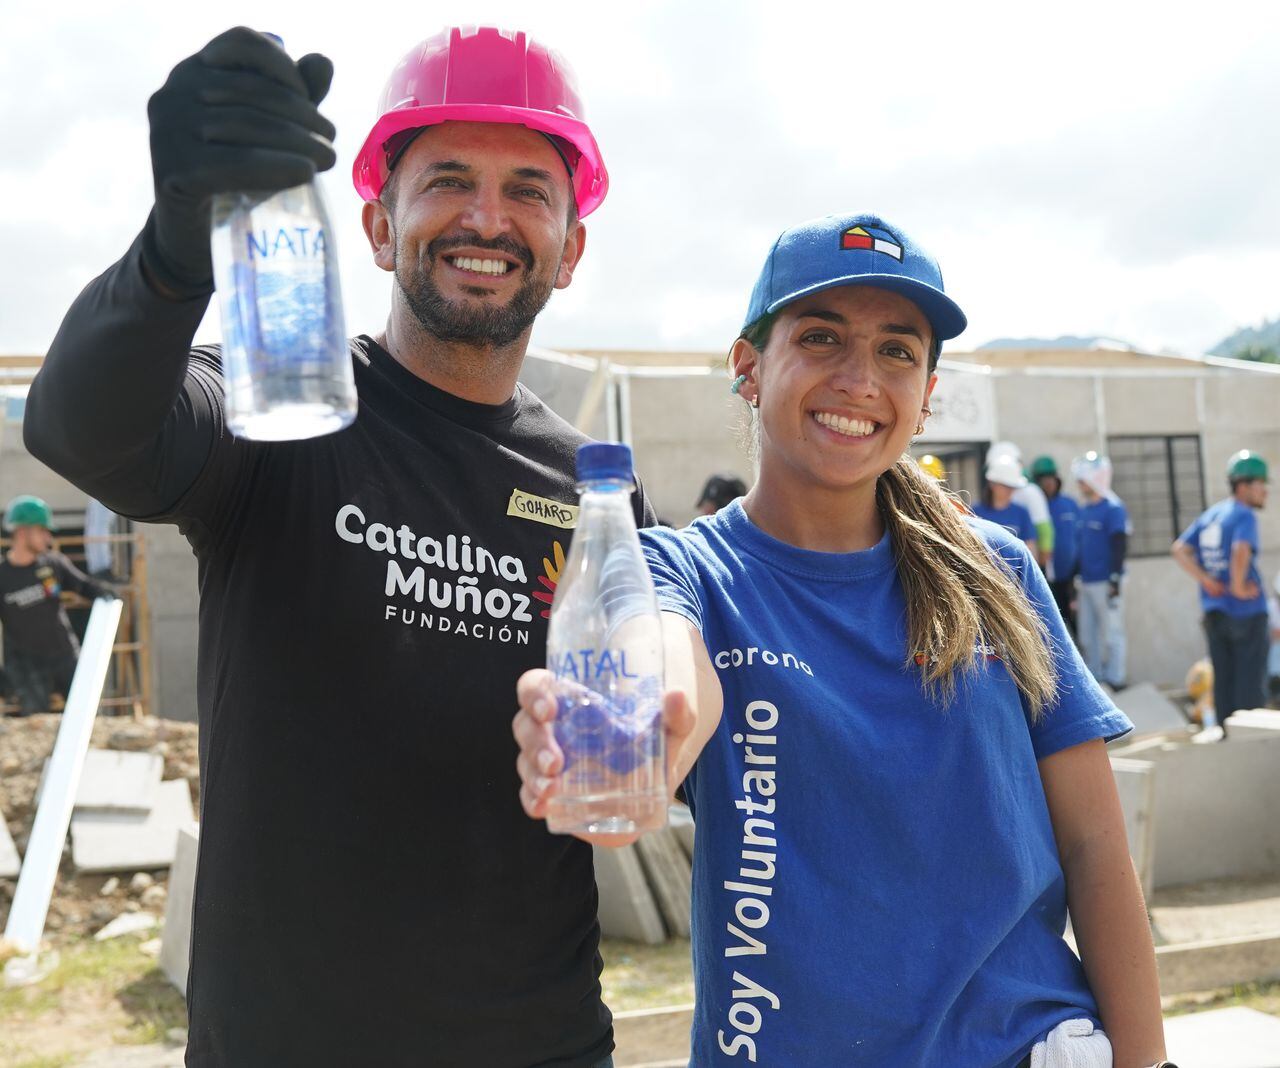 Parte de la financiación del proyecto se logra a través de las utilidades que genera la venta de agua Natal.